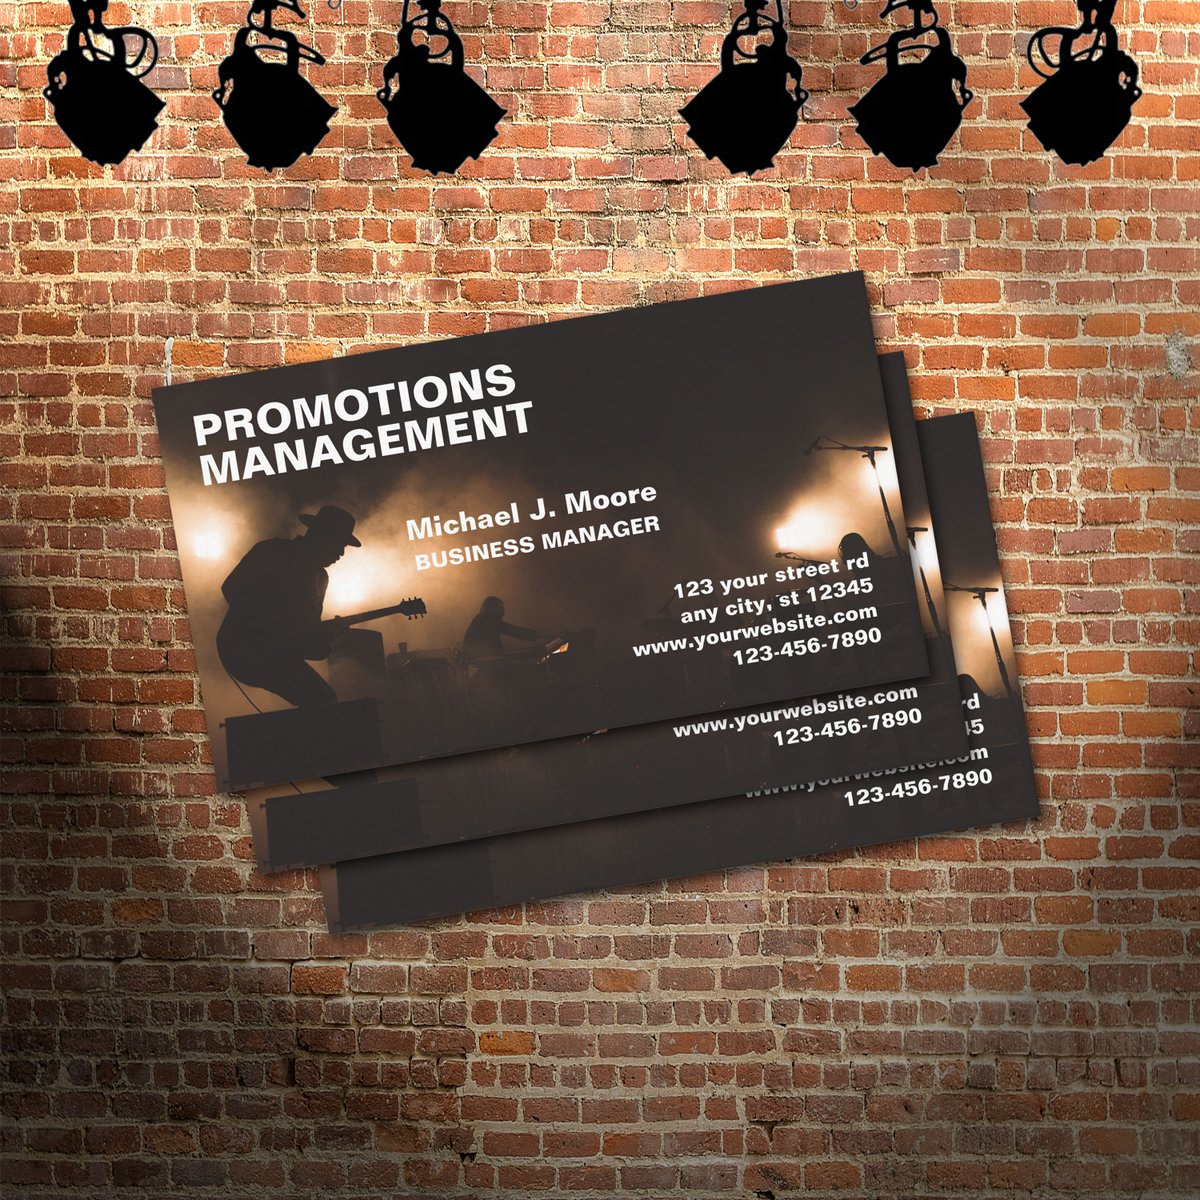 Music Promotions Business Card
#businesscards #promotion #music #entertainment #businessmanager #agent #concertpromotion #concerts #gig #manager #musicmanager #1bizchoice 

1bizchoice.com